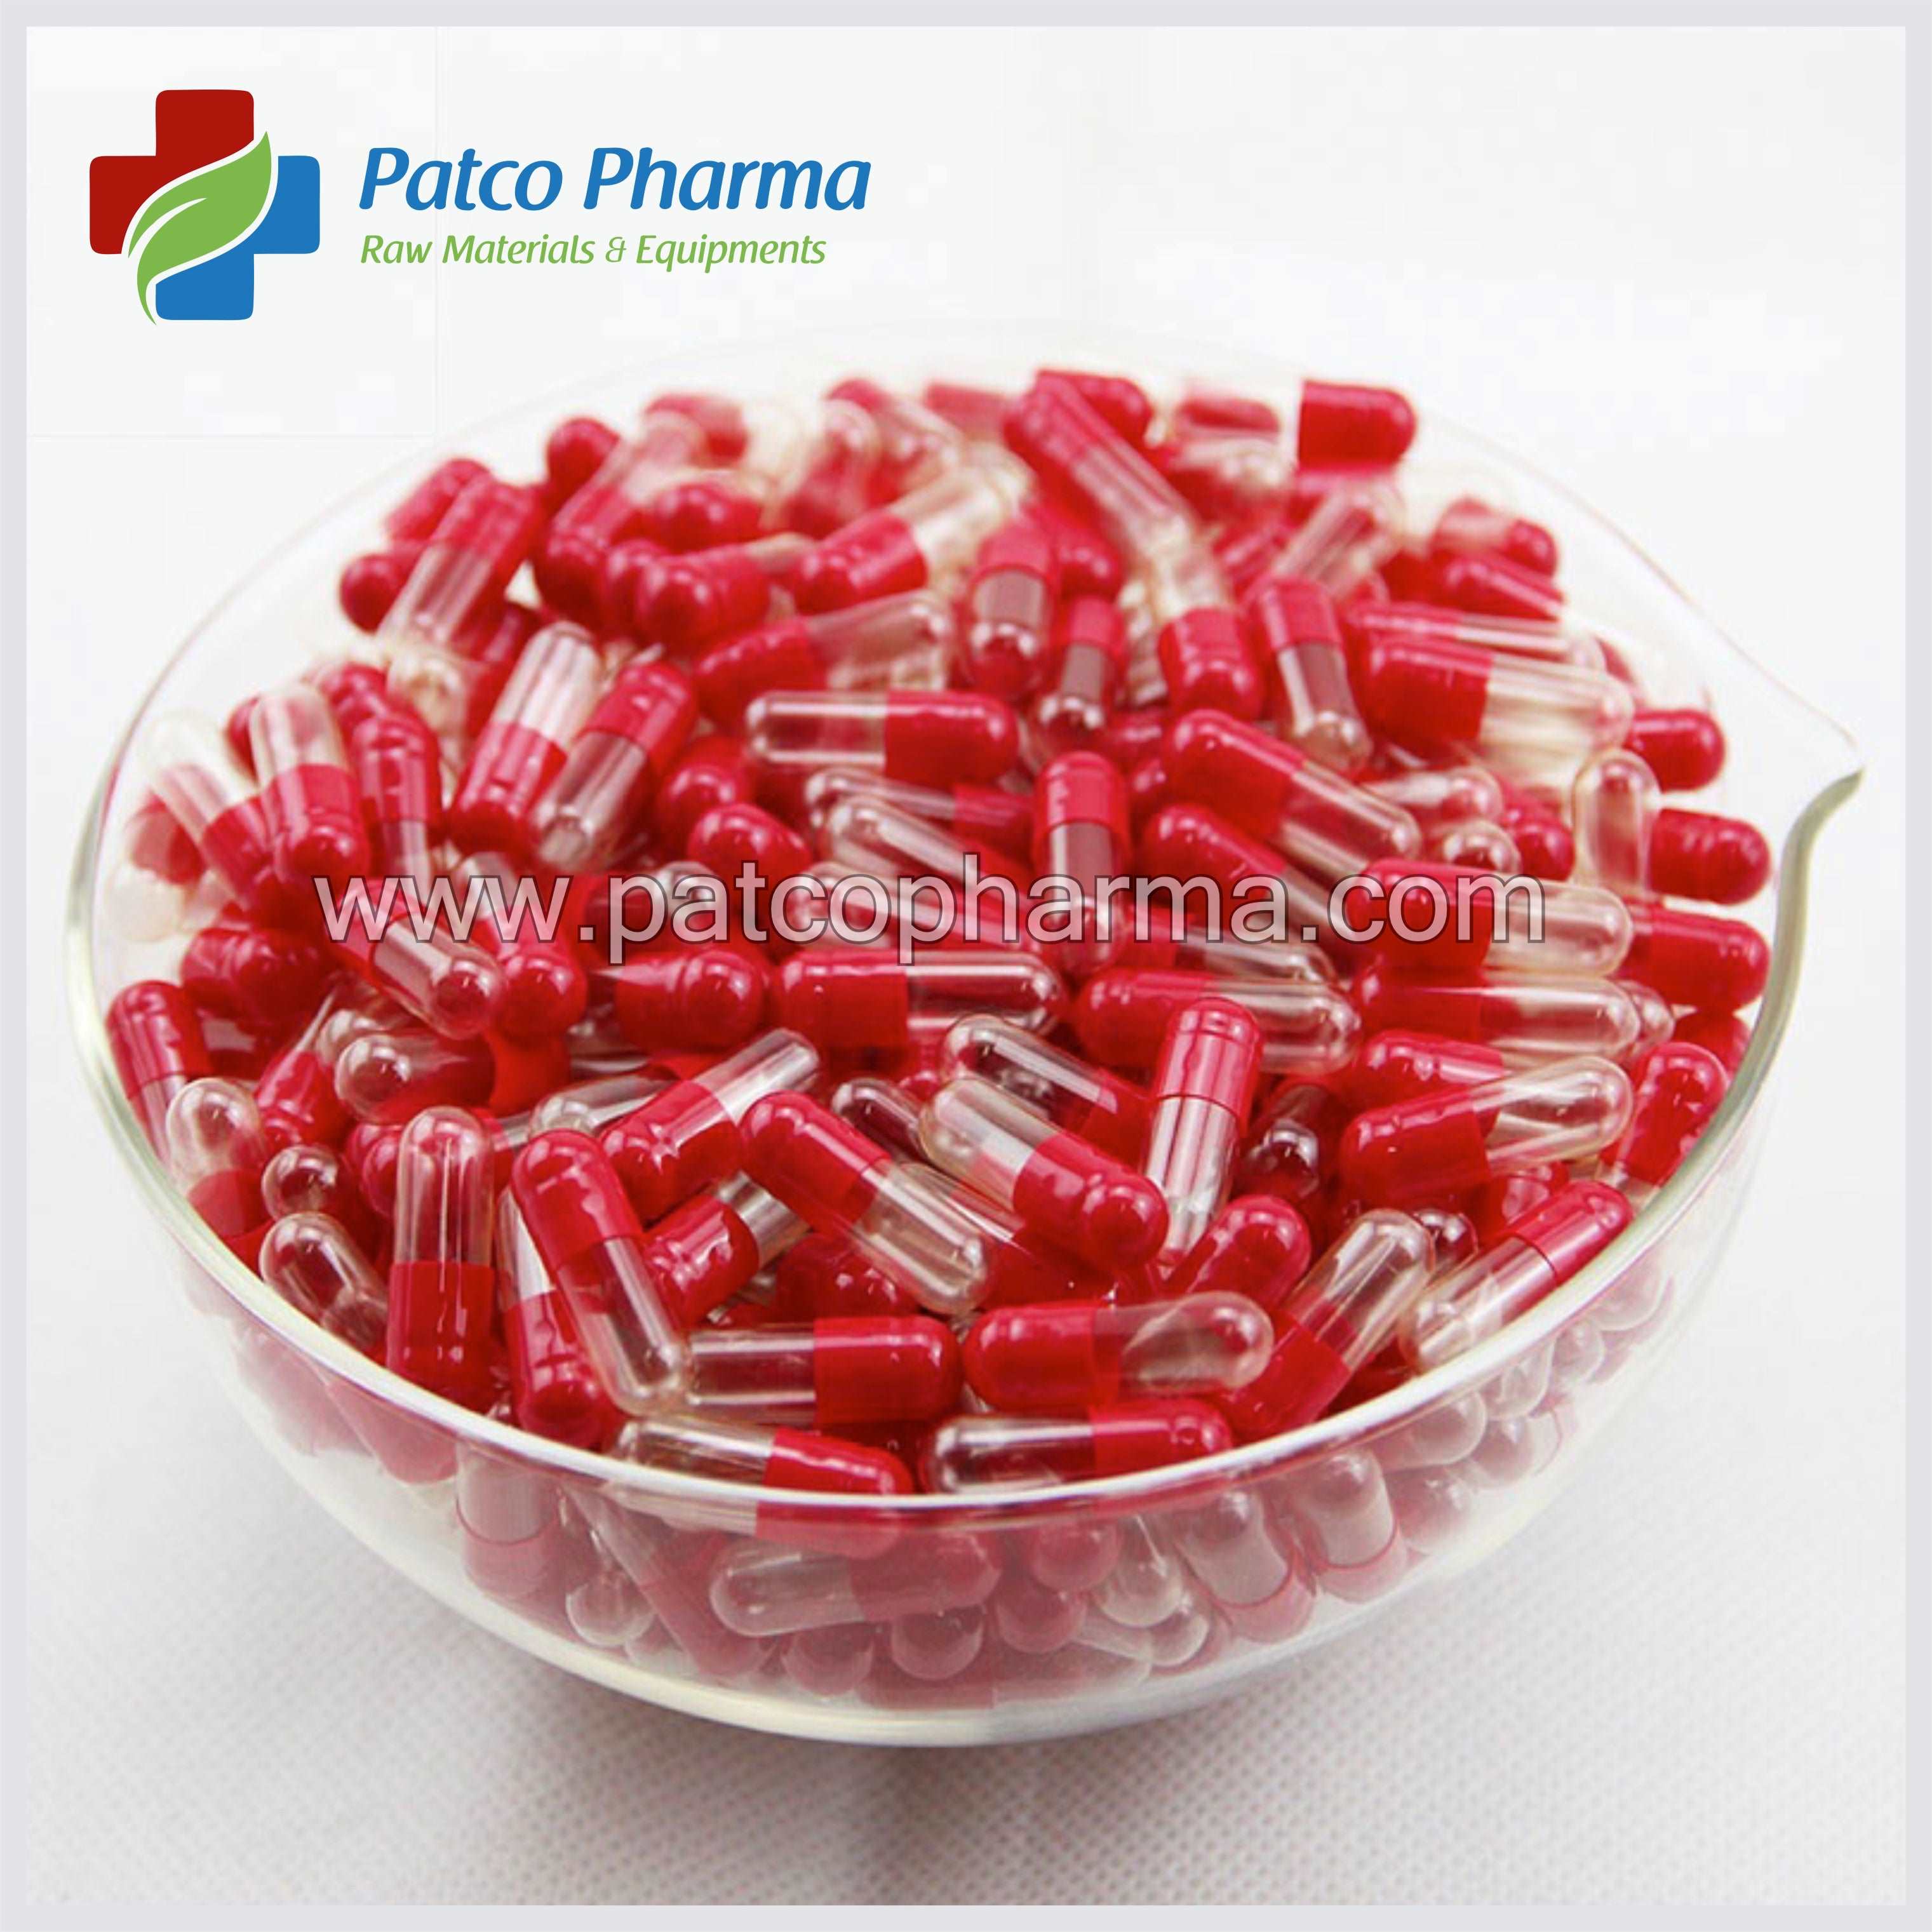 Size 2 Red/CT Empty Gelatin Capsule Patco Pharma